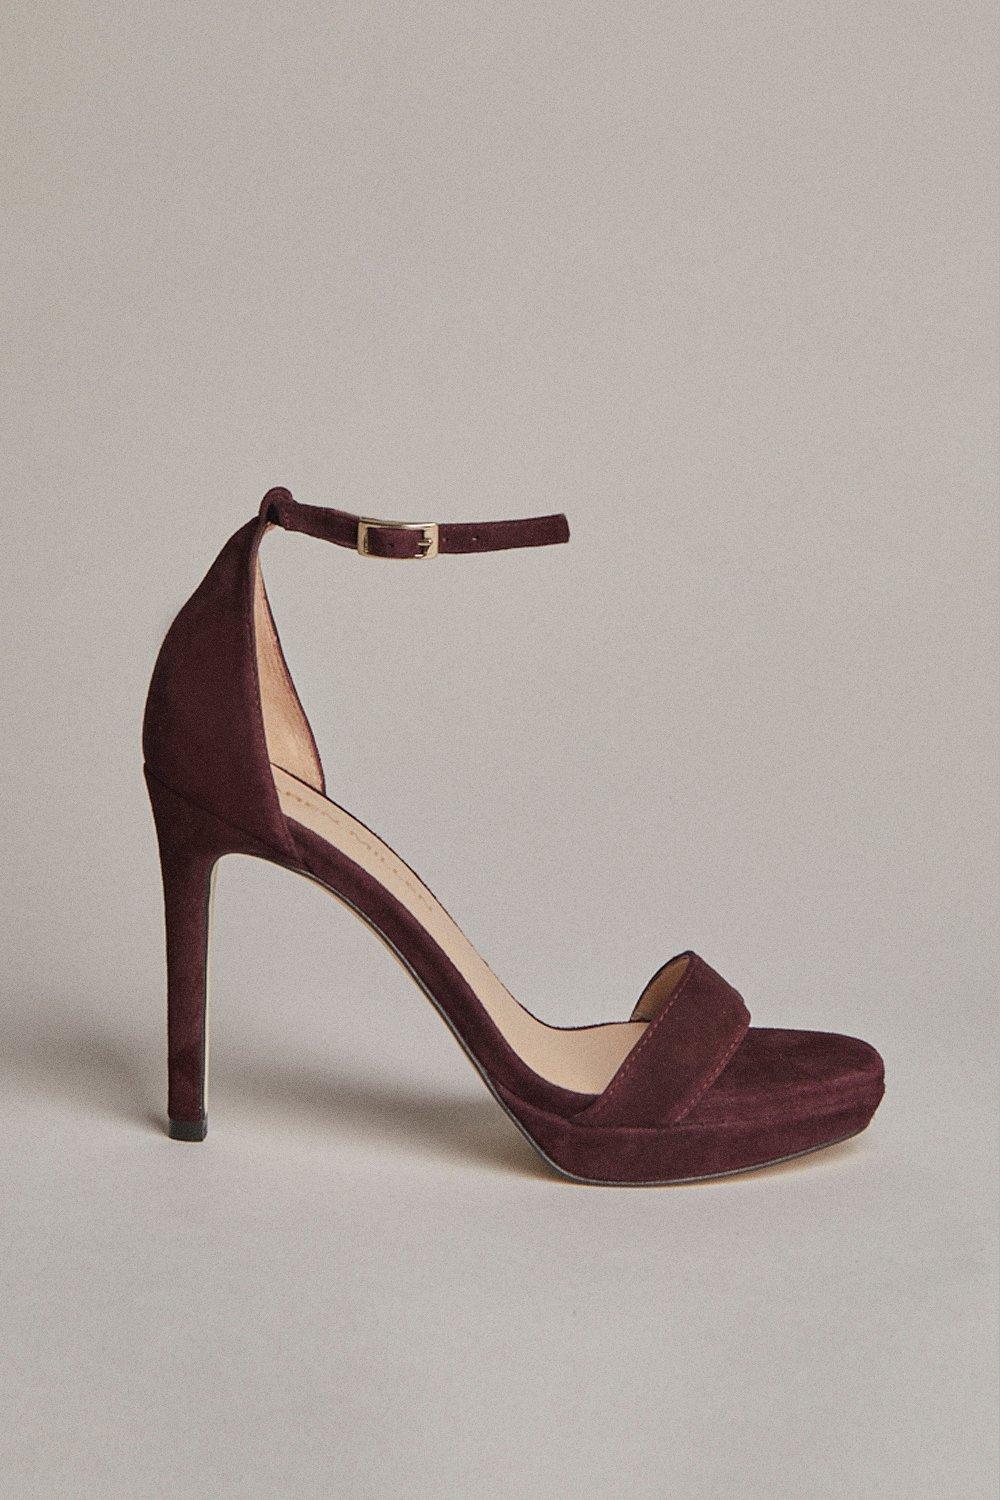 Product photo of Karen millen suede square toe platform sandal red